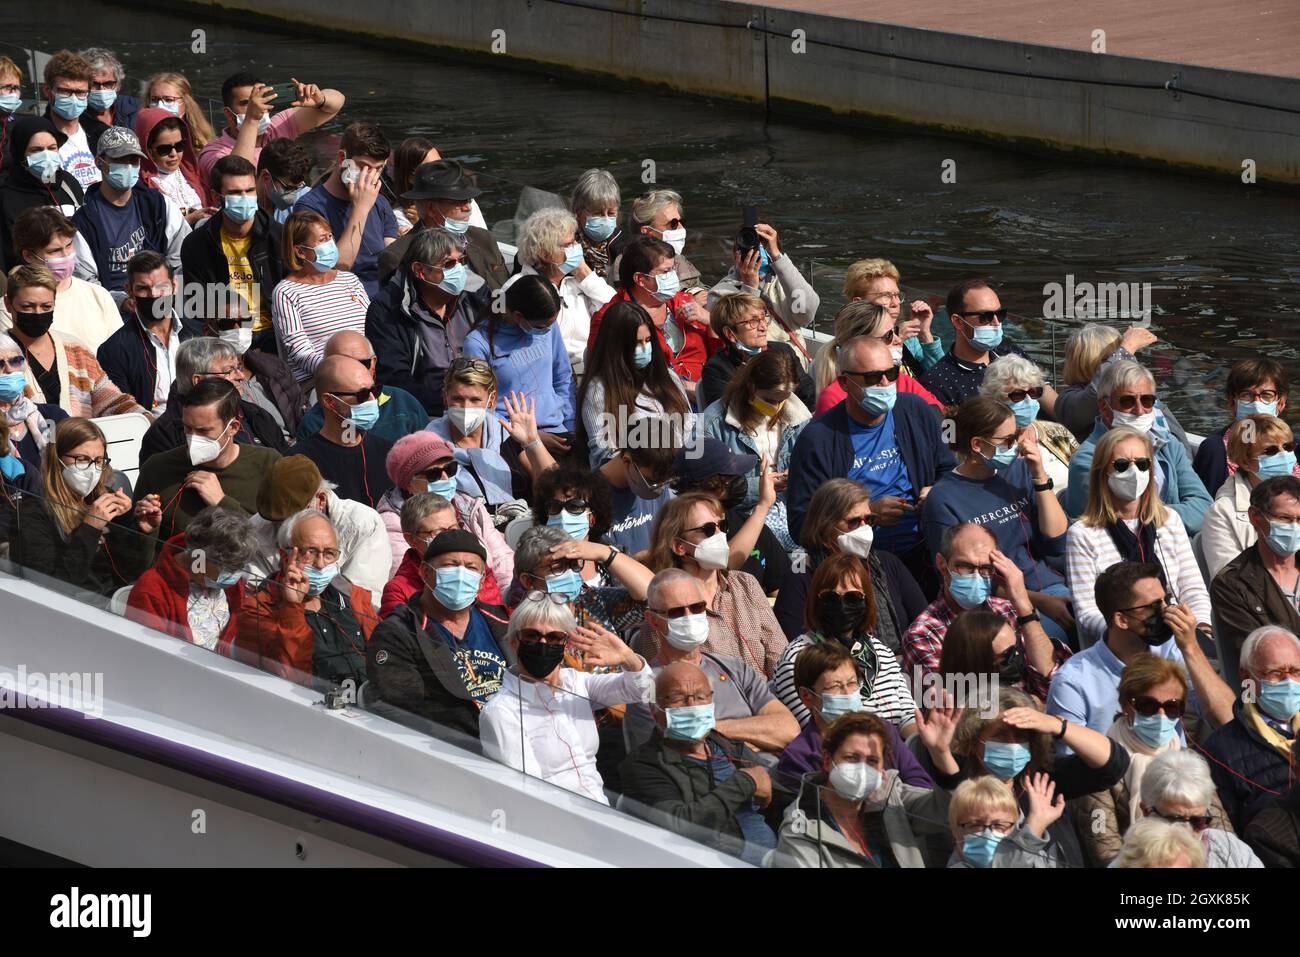 Touristes portant des masques pandémiques Covid sur un bateau à vue Strasbourg France 2021 coronavirus virus tourisme vacances voyage passagers vacances Banque D'Images